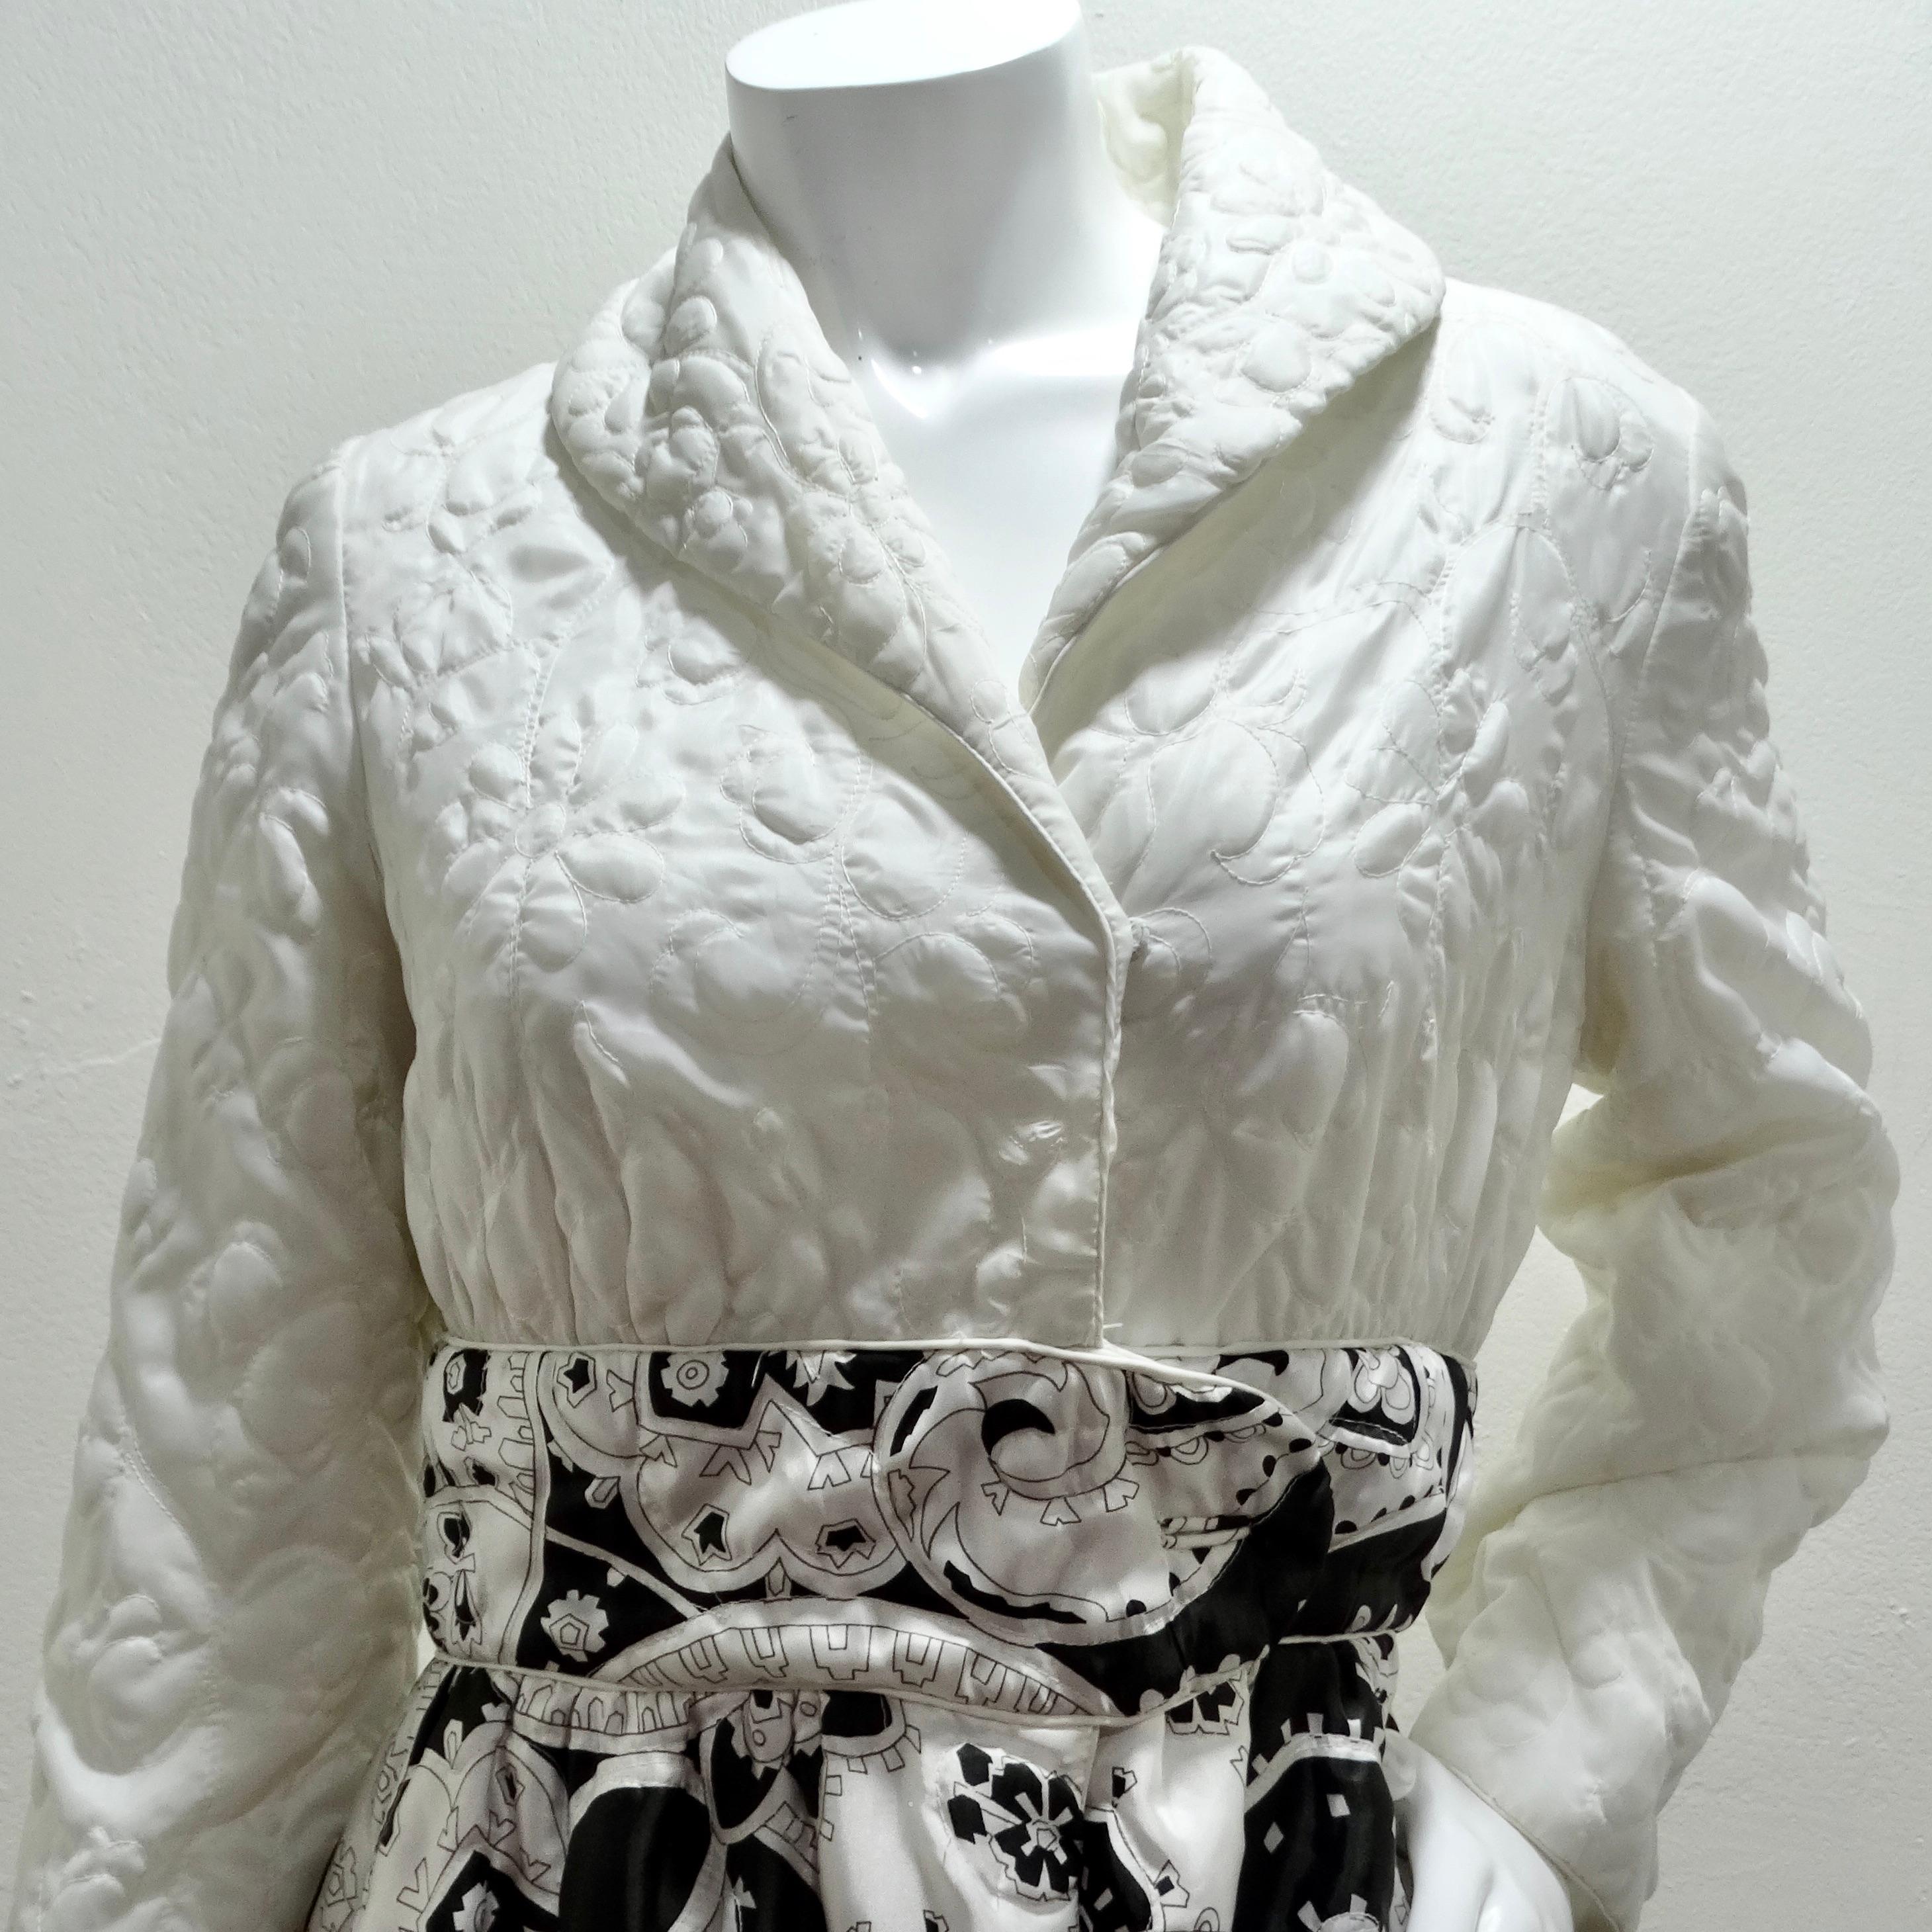 Voici le superbe peignoir matelassé noir et blanc des années 1960, une pièce polyvalente et accrocheuse qui respire le charme et l'élégance vintage. Réalisée avec une attention méticuleuse aux détails, cette longue veste/robe matelassée présente un